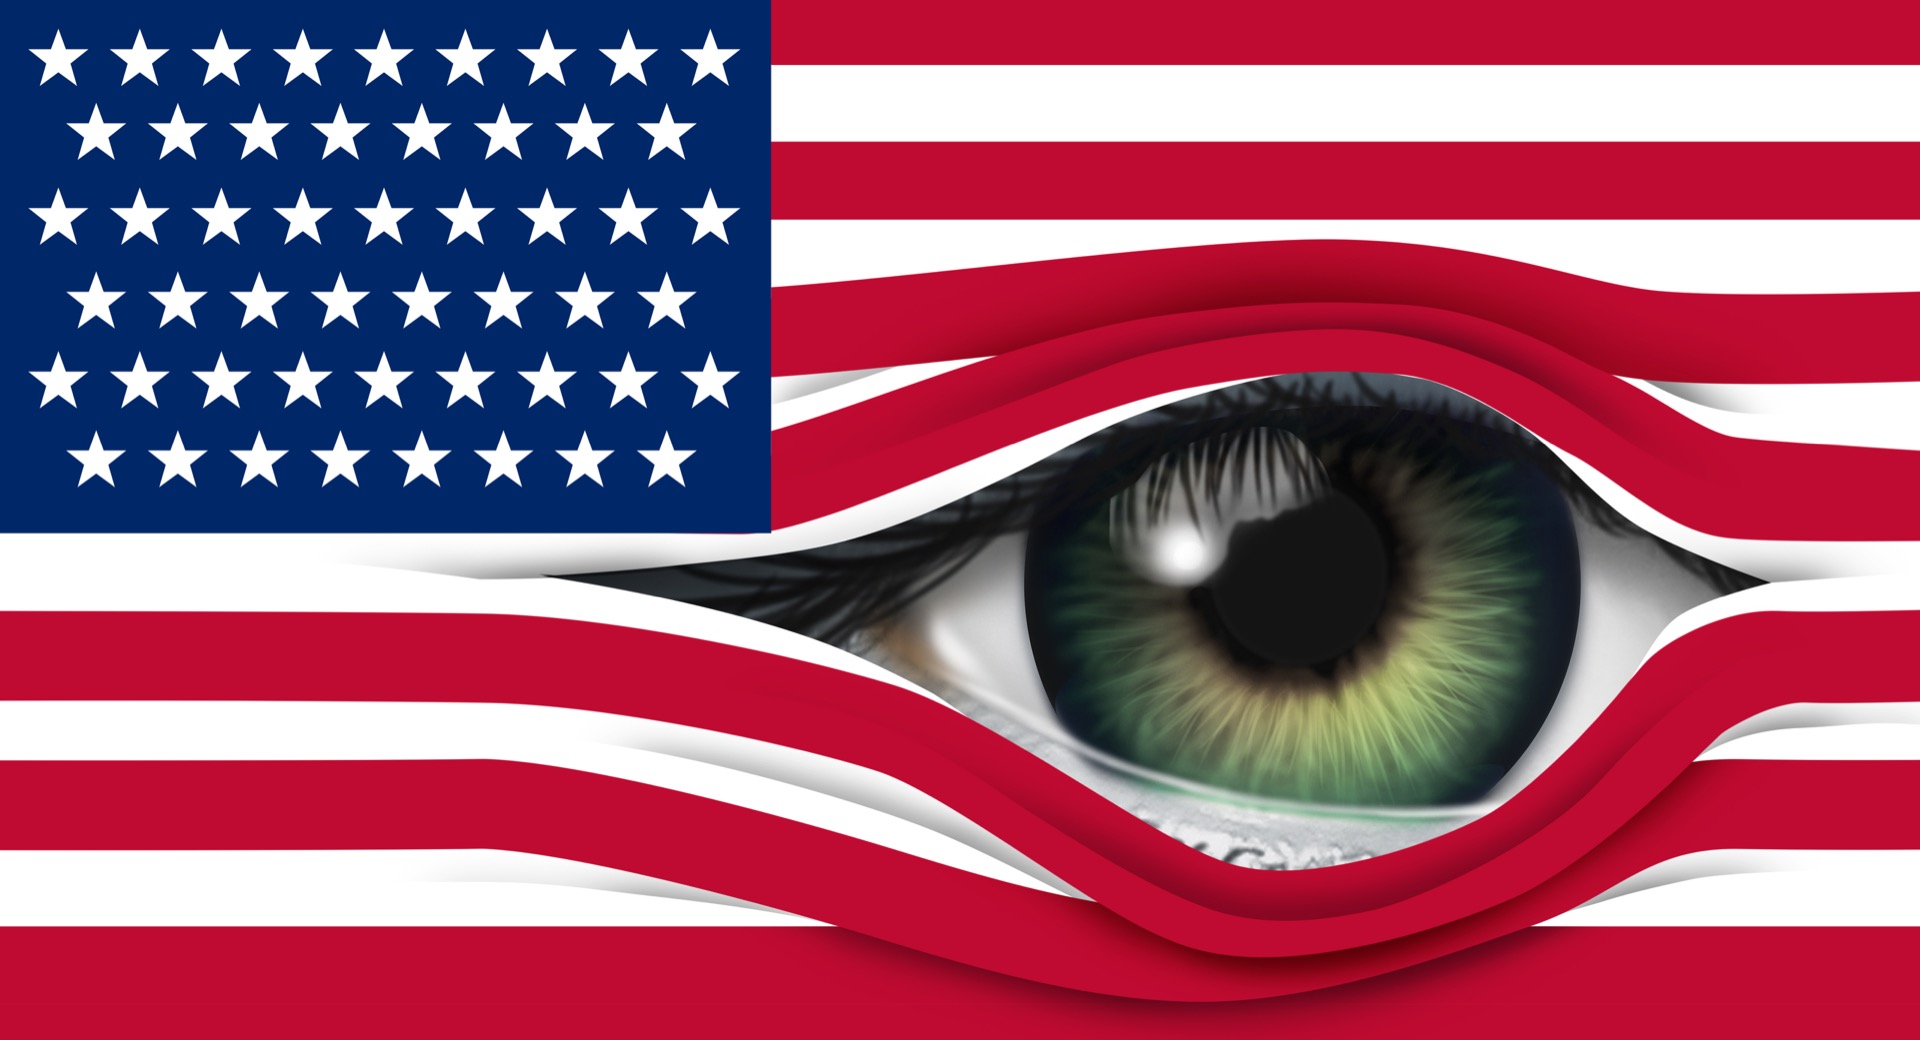 La loi Fisa autorisant les autorités américaines à surveiller les citoyens étrangers a été renouvelée et élargie. © freshidea, Adobe Stock